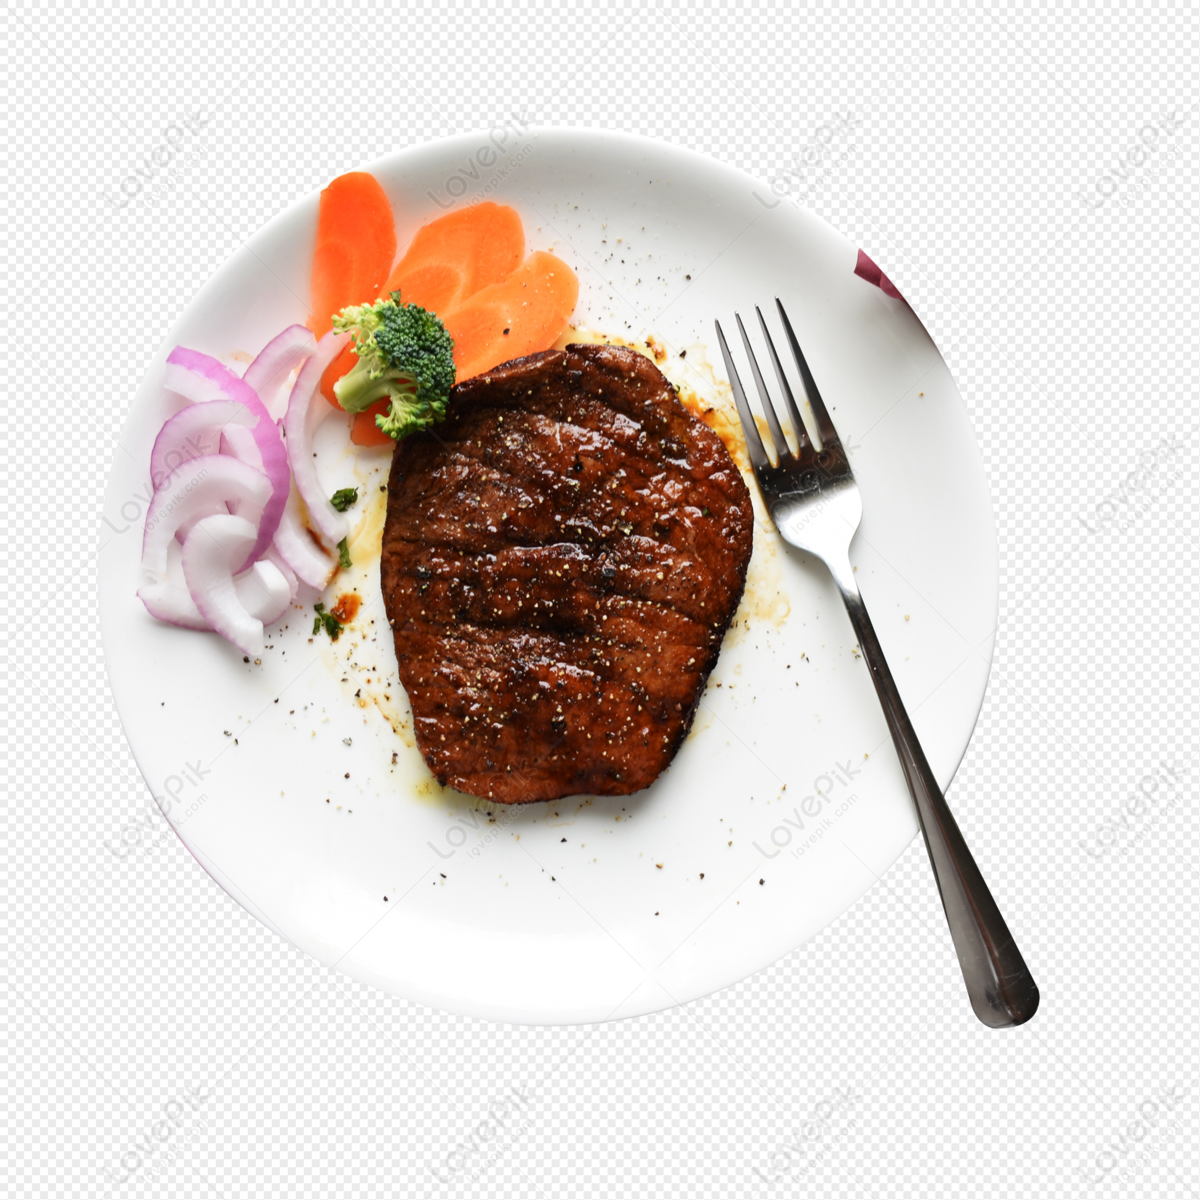 Đĩa bít tết thơm ngon và hấp dẫn với lớp thịt bò mềm chiên giòn ở bên ngoài. Bạn có muốn khám phá bí quyết tạo ra món đồ ăn này ngon như nào không?